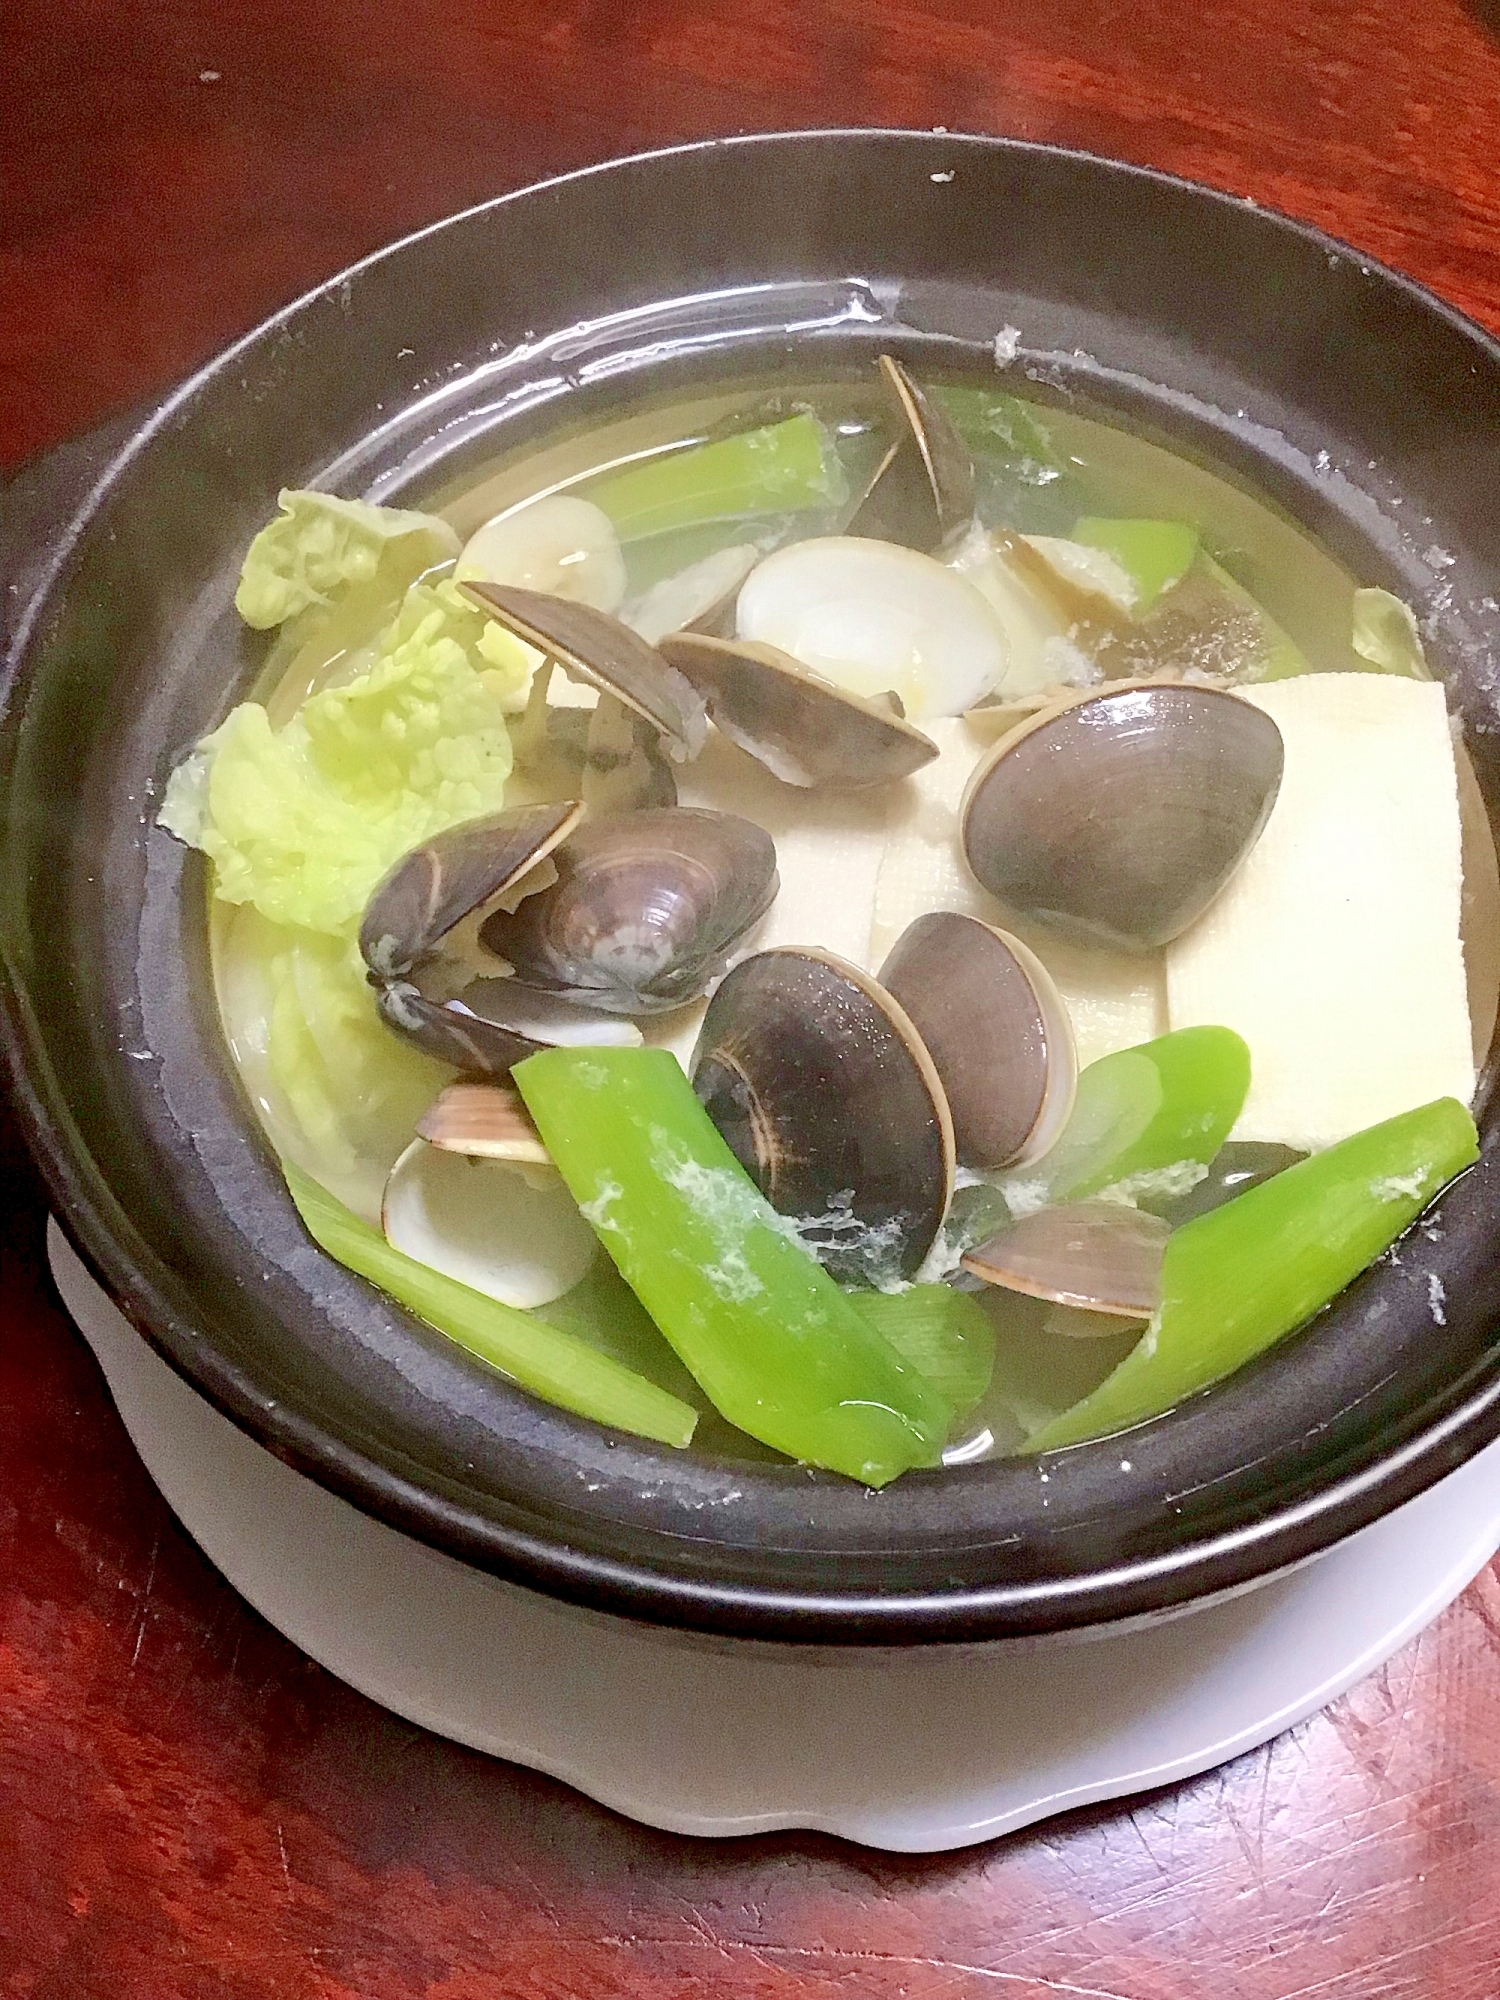 ハマグリの湯豆腐鍋。